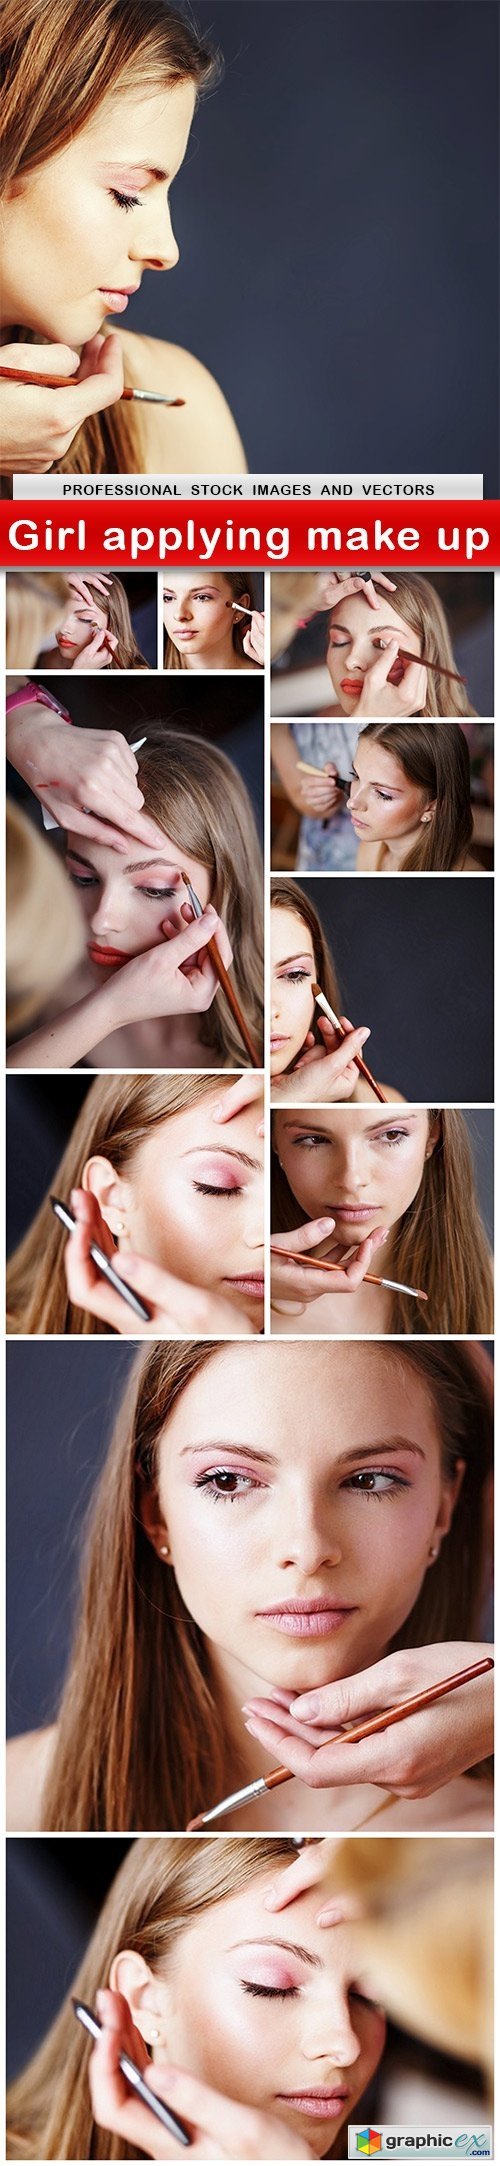 Girl applying make up - 11 UHQ JPEG